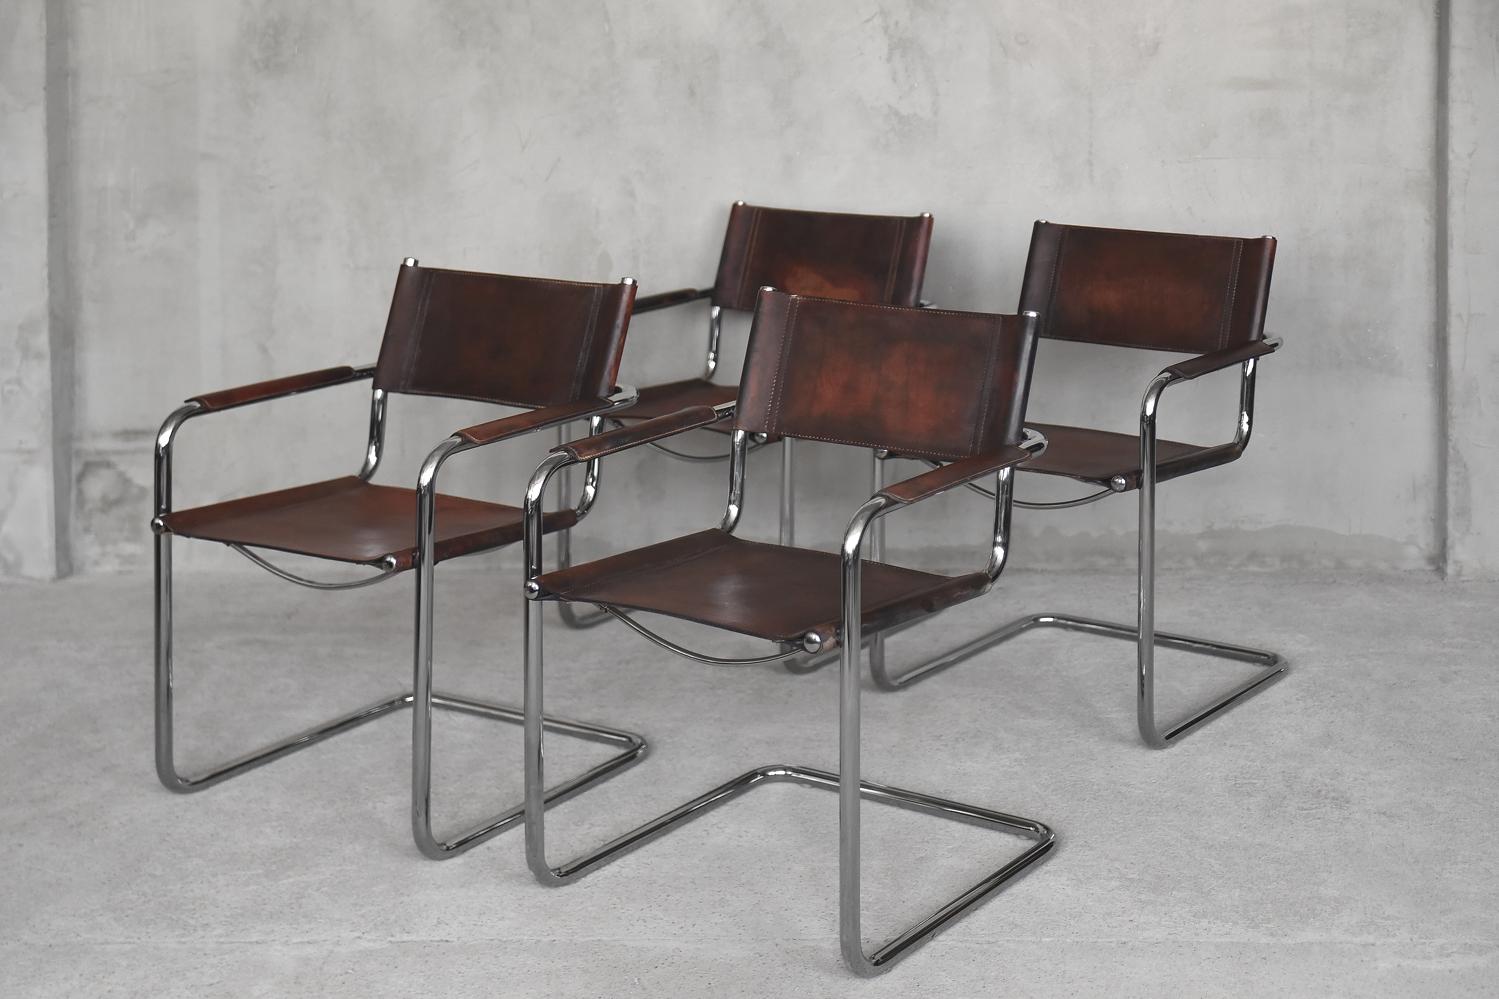 Dieses Set aus vier klassischen MG5-Freischwingern wurde vom Architekturbüro Centro Studi für Matteo Grassi entworfen. Diese Stühle im Bauhaus-Stil wurden ursprünglich in den 1960er Jahren in Italien hergestellt. Die Stühle haben schöne und dicke